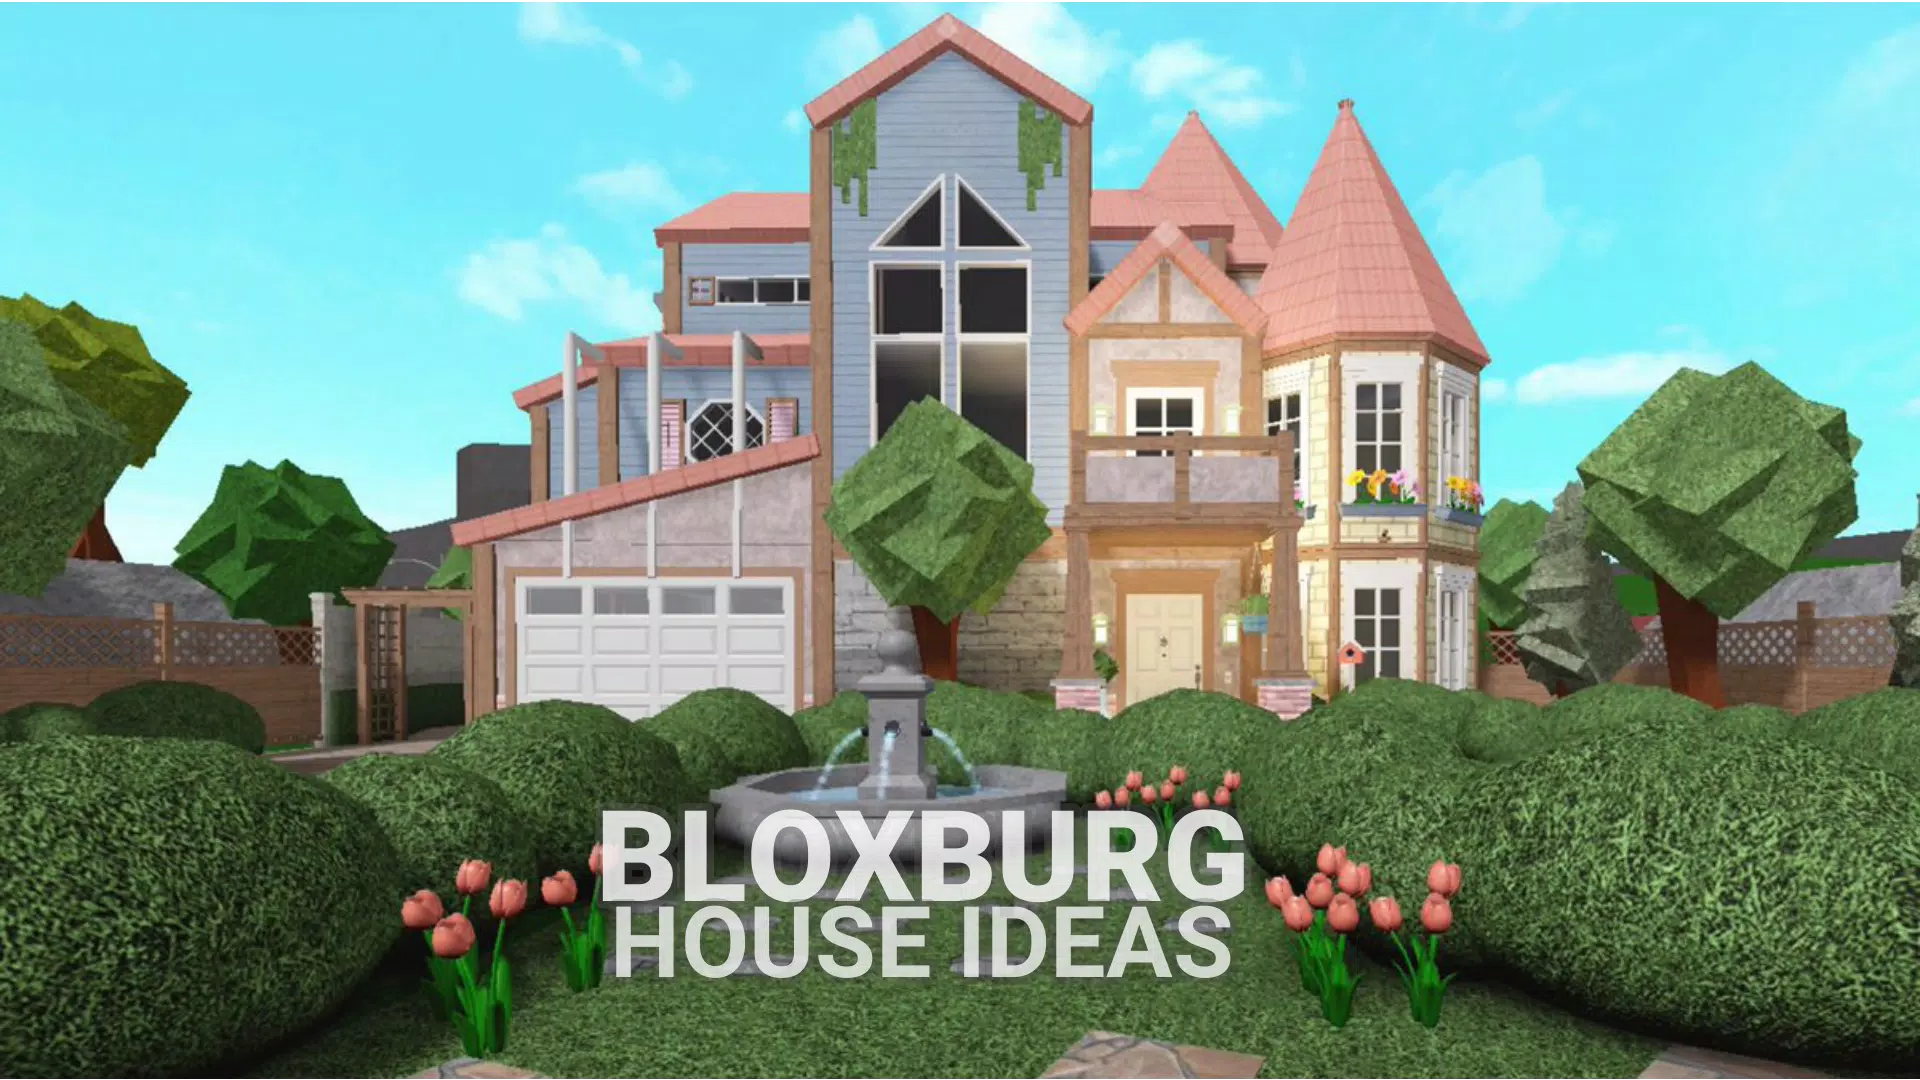 900+ ideias de Id de roupa bloxburg  roblox, coisas grátis, idéias de  decoração de casa